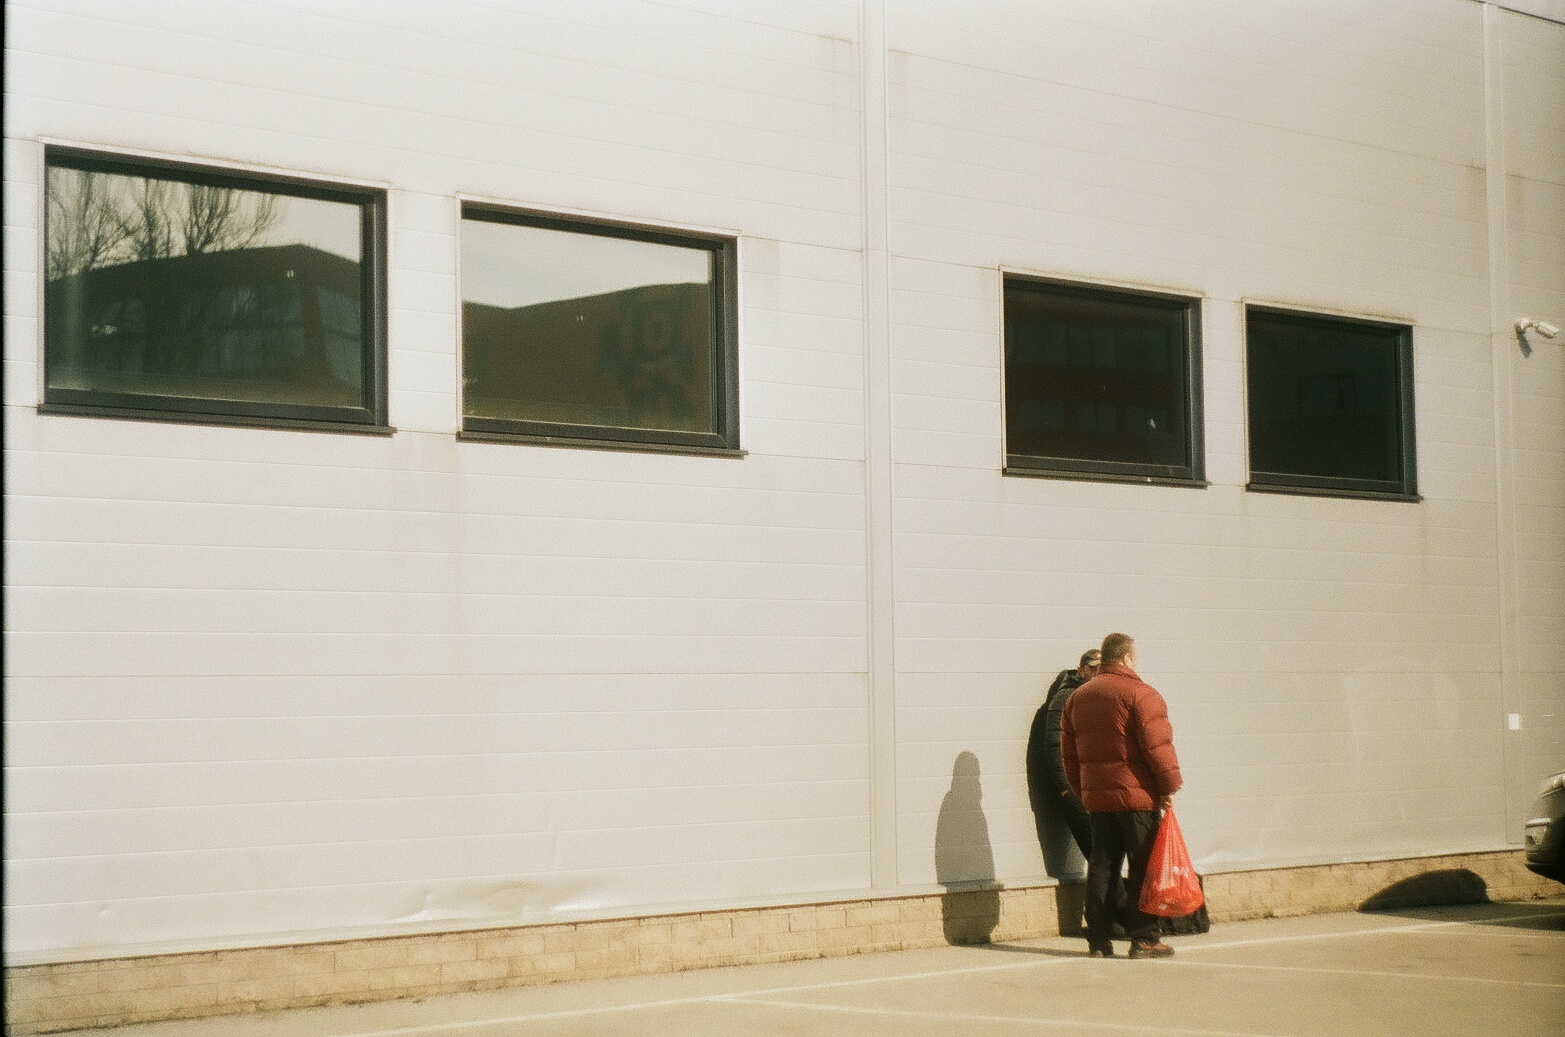 Kaksi ihmistä juttelee ison teollisuusrakennuksen edessä selin kameraan